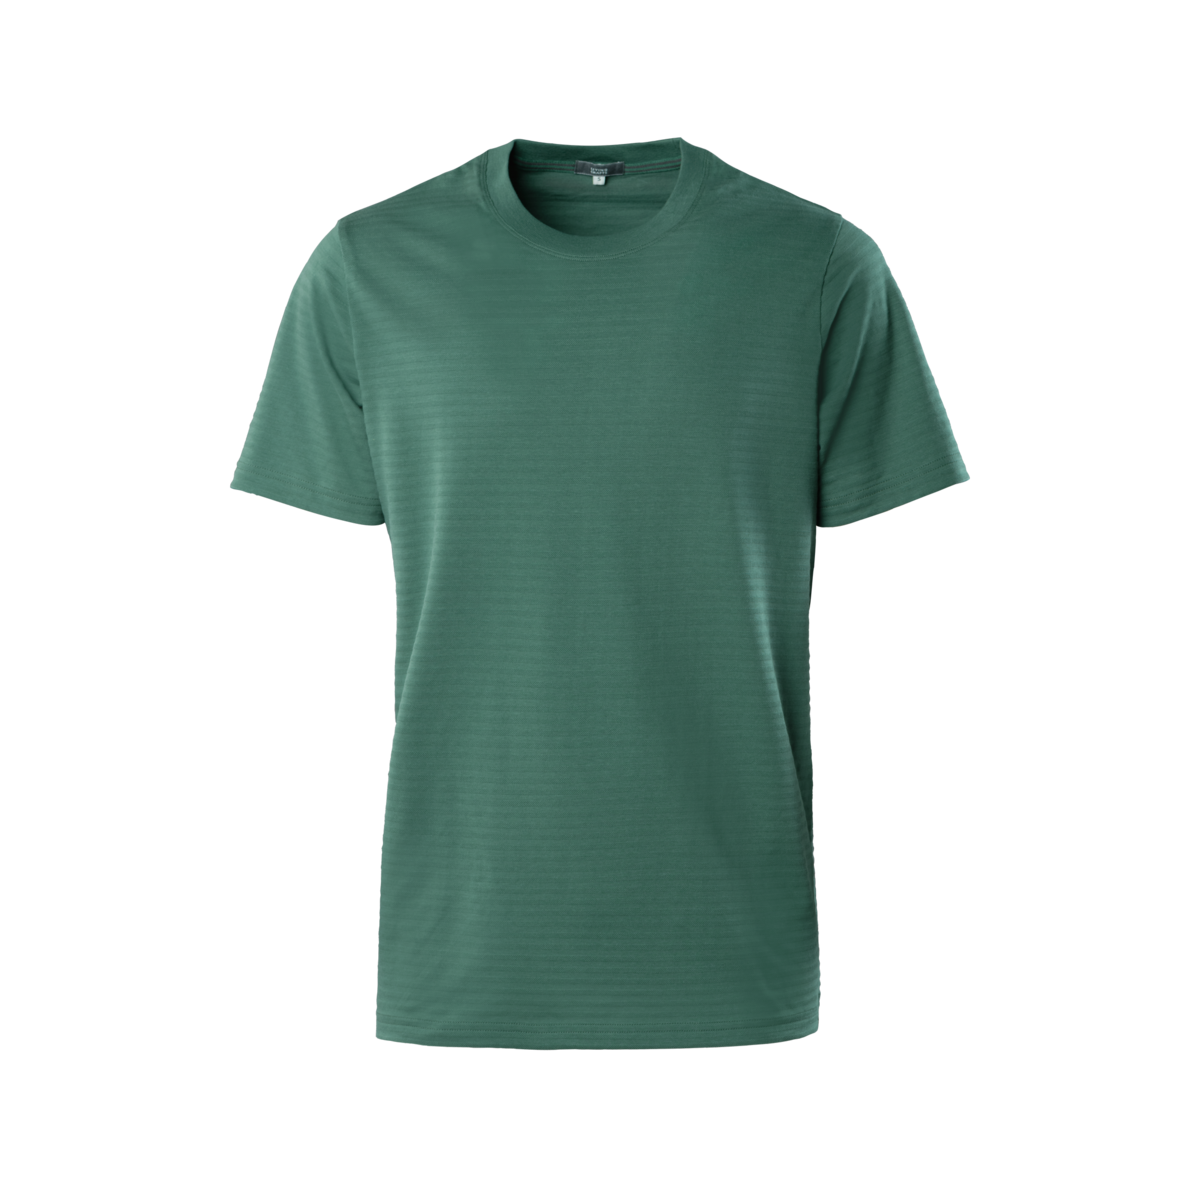 Green T-shirt, NICLAS